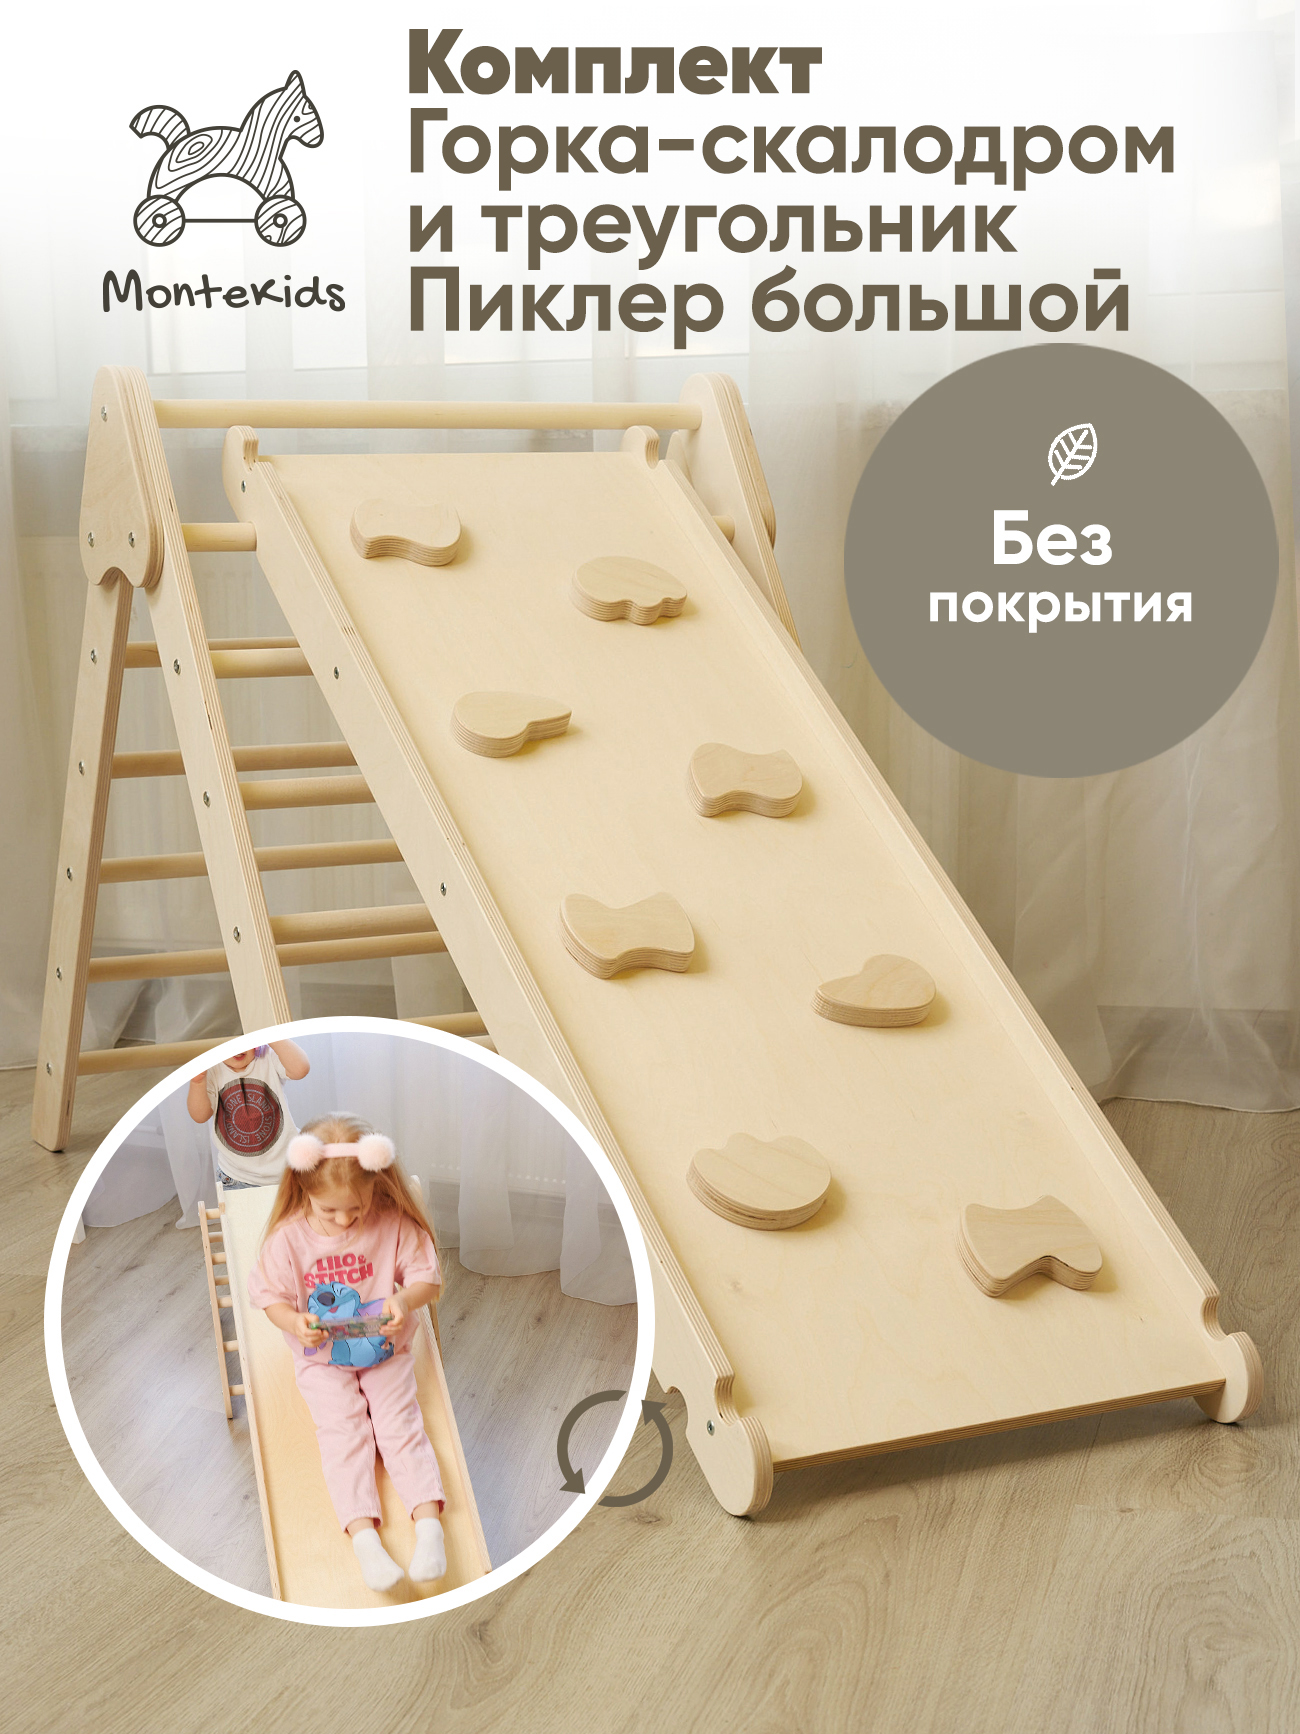 Комплект Треугольник Пиклер большой и горка-скалодром Montekids горка гамак для купания новорожденных kidwick для детской ванночки relax бежевый k0241800